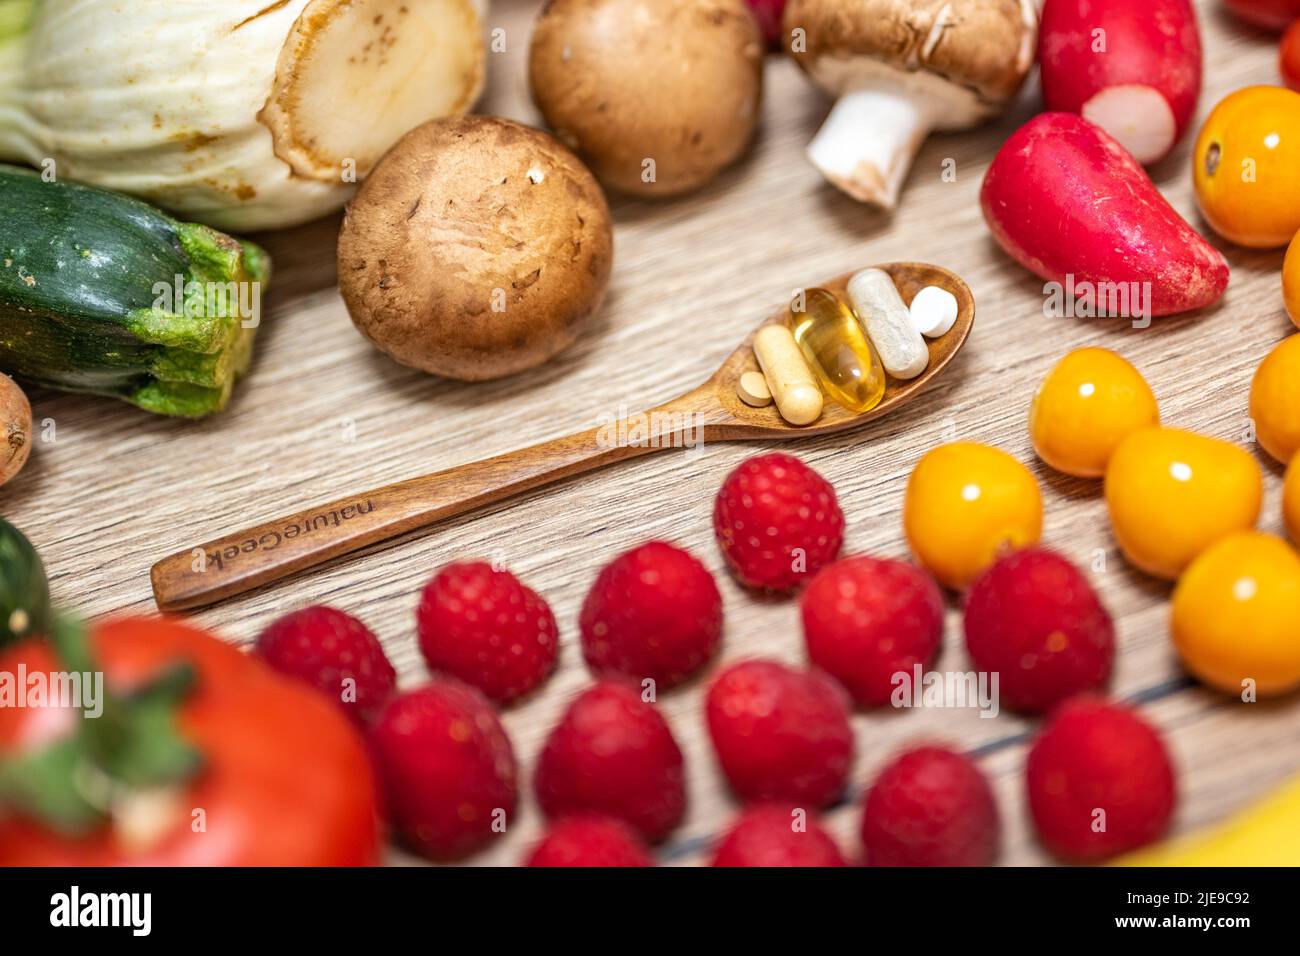 Une cuillère en bois avec des compléments alimentaires est placée dans le milieu des fruits et légumes frais, qui sont placés sur une table en bois. Compléments alimentaires enab Banque D'Images